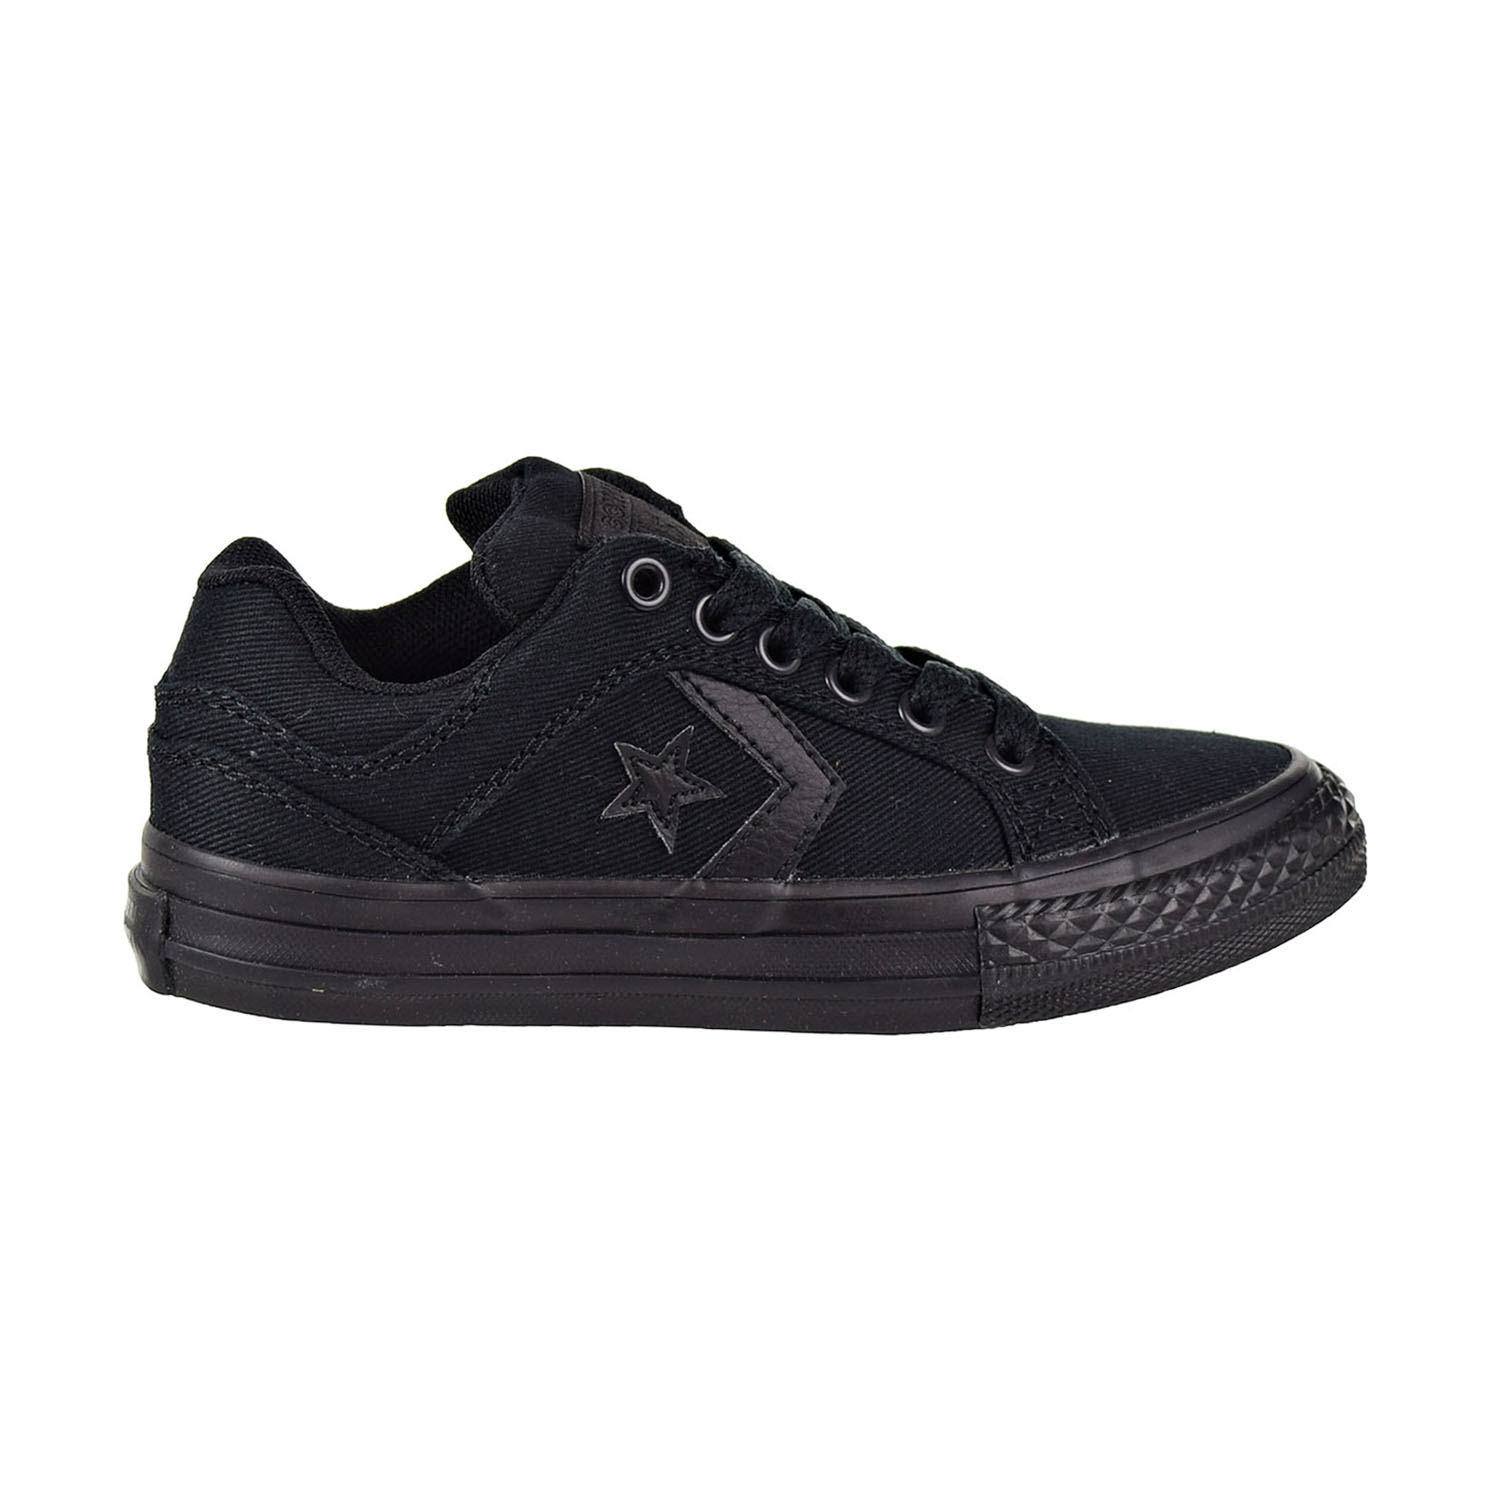 black converse kids shoes